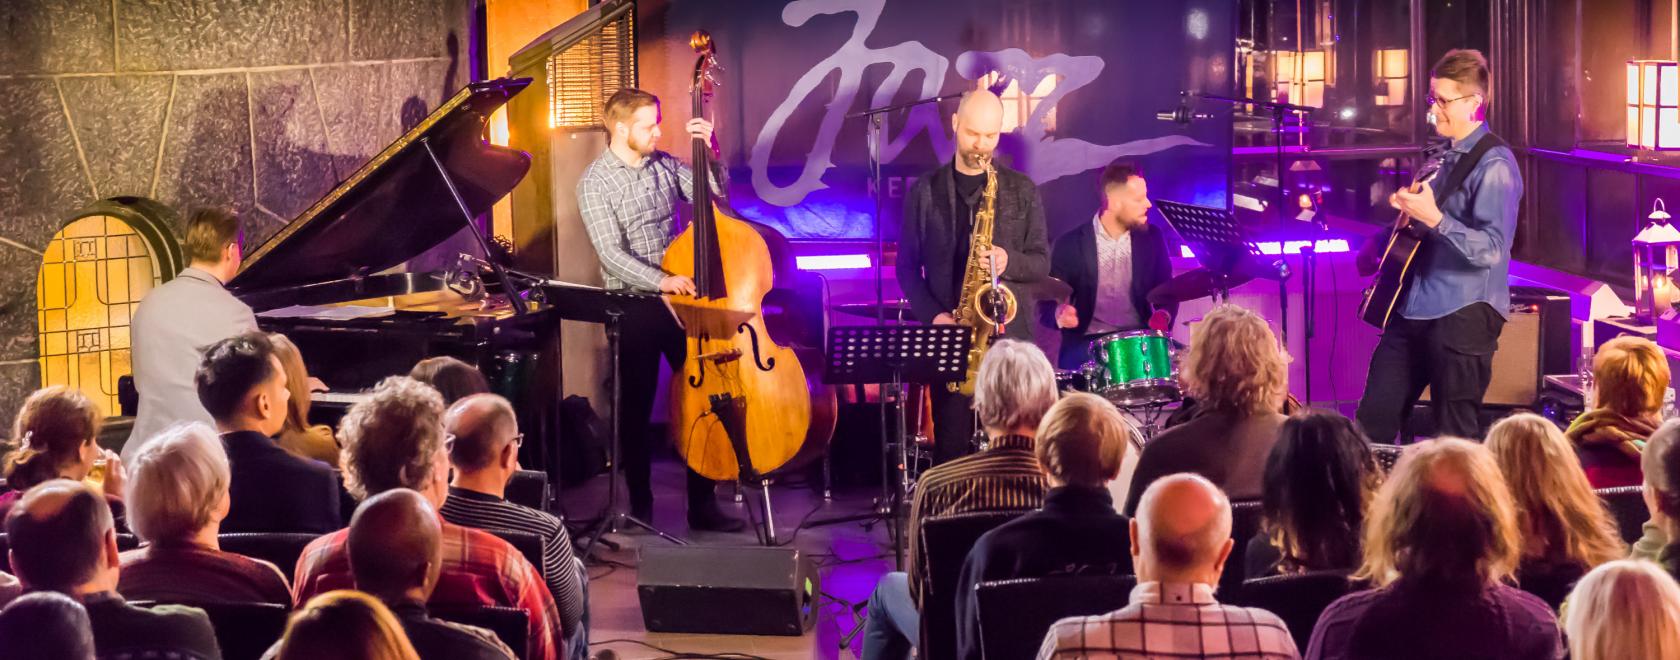 Joensuu Jazzkerho 76 sai 40 000 euroa ”Laulumailta valtakunnalliseksi Jazzkeskukseksi” -hankkeeseen.